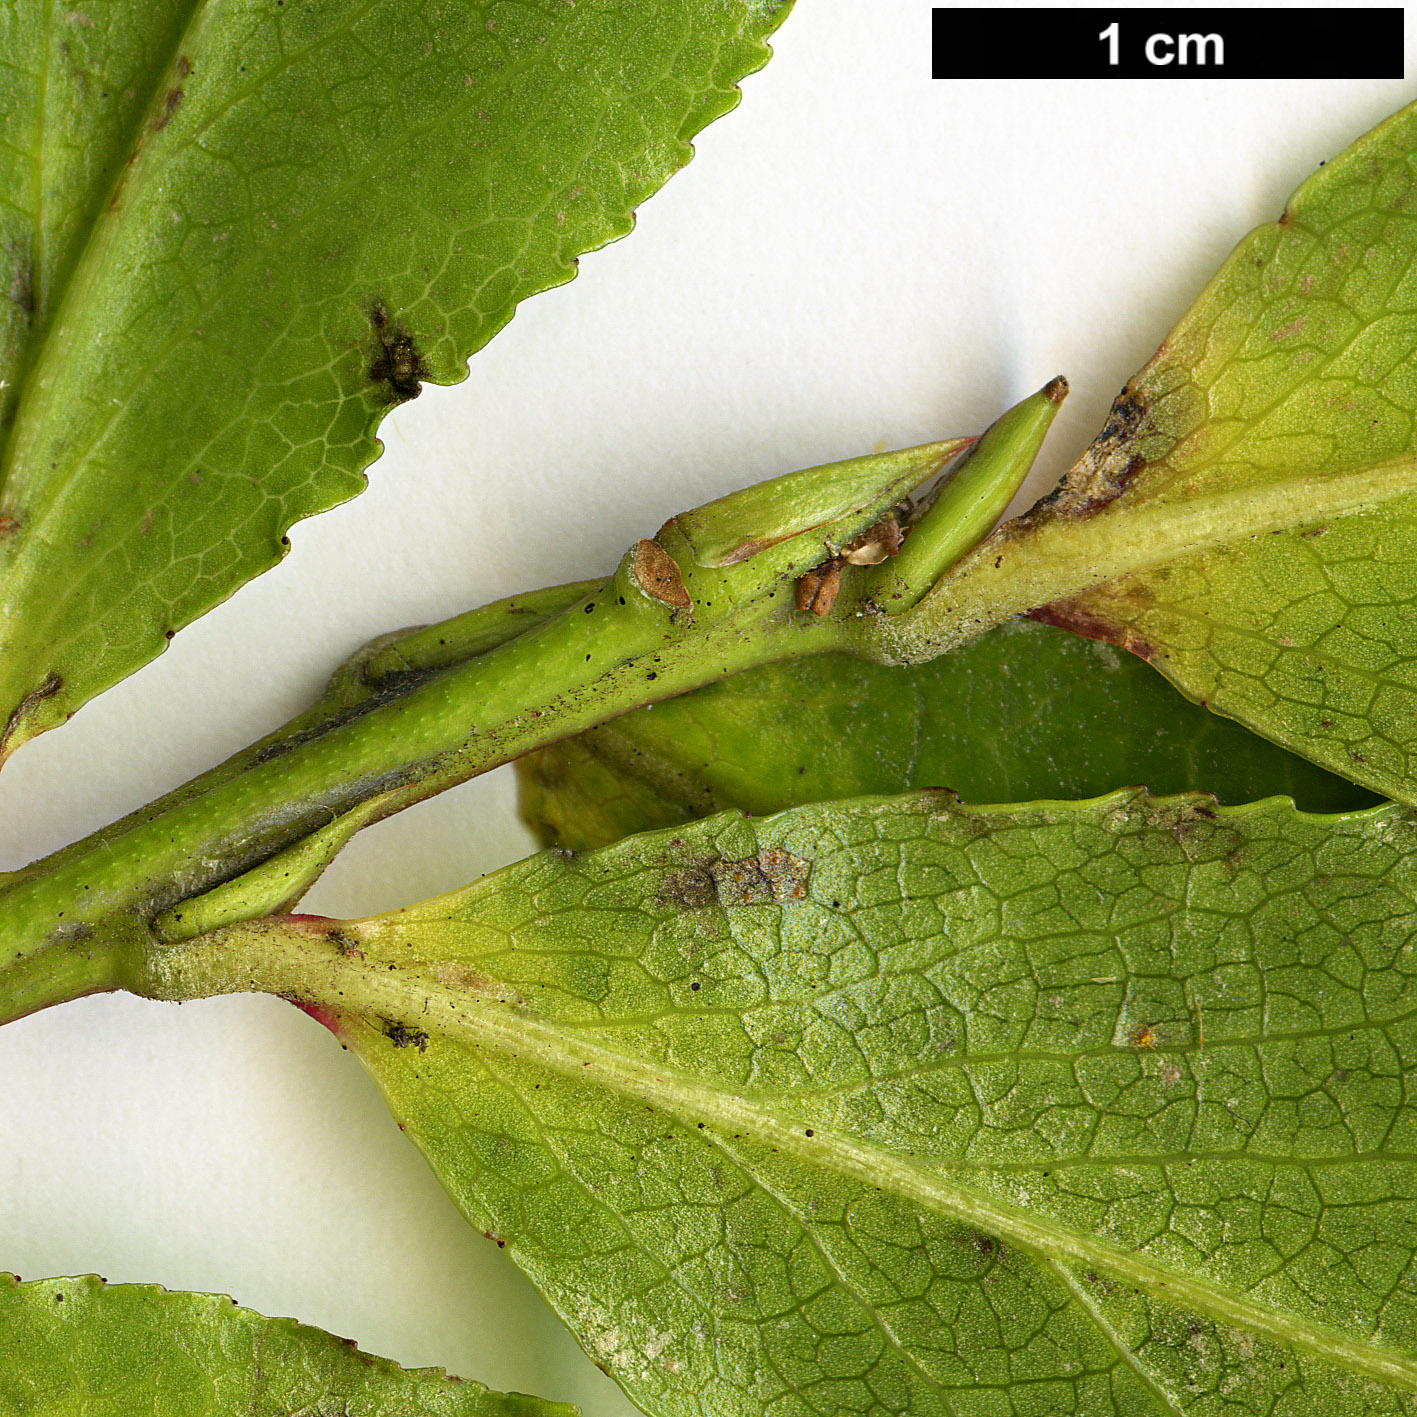 High resolution image: Family: Ericaceae - Genus: Vaccinium - Taxon: cylindraceum